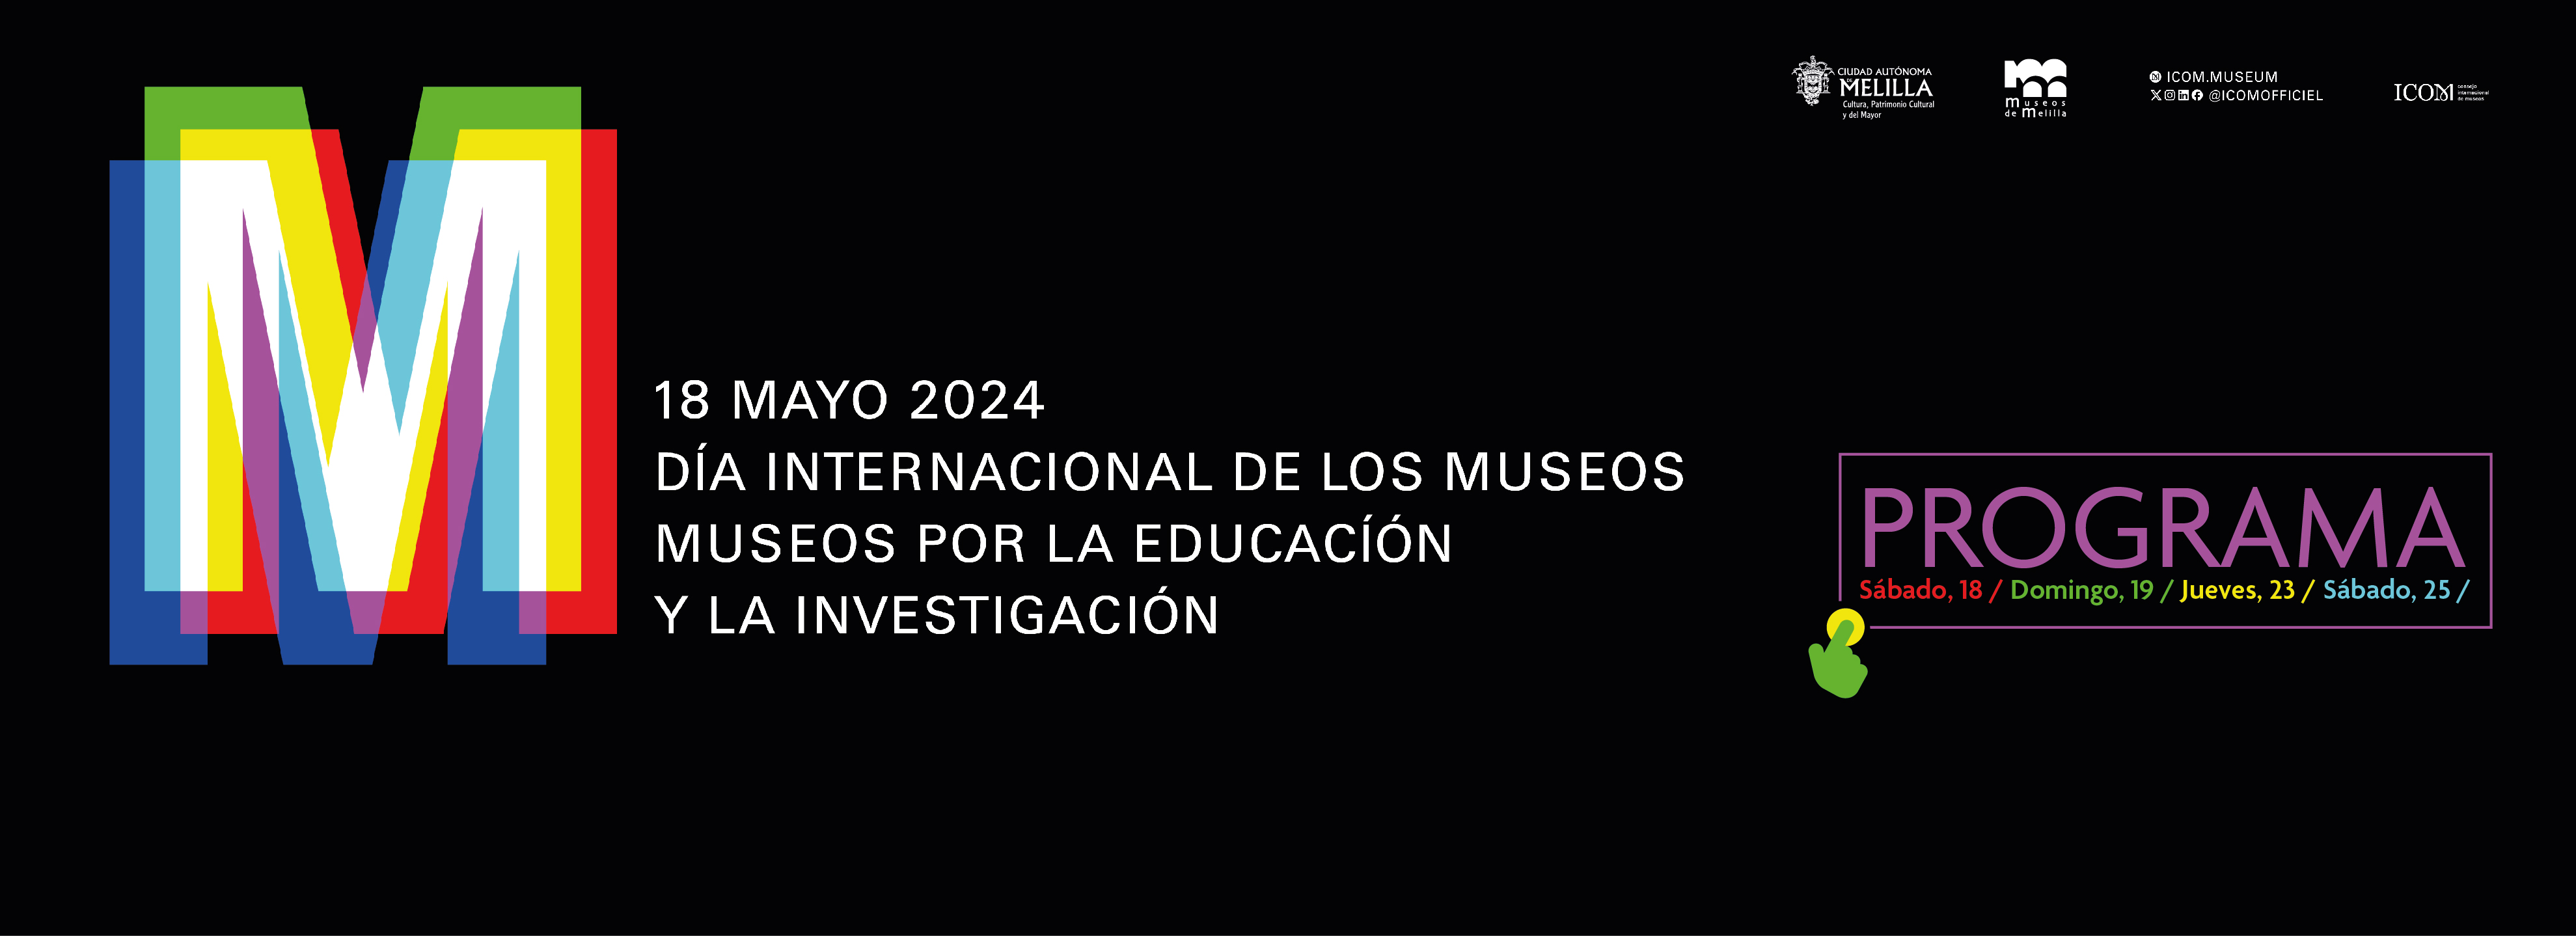 Da Internacional de los Museos 2024